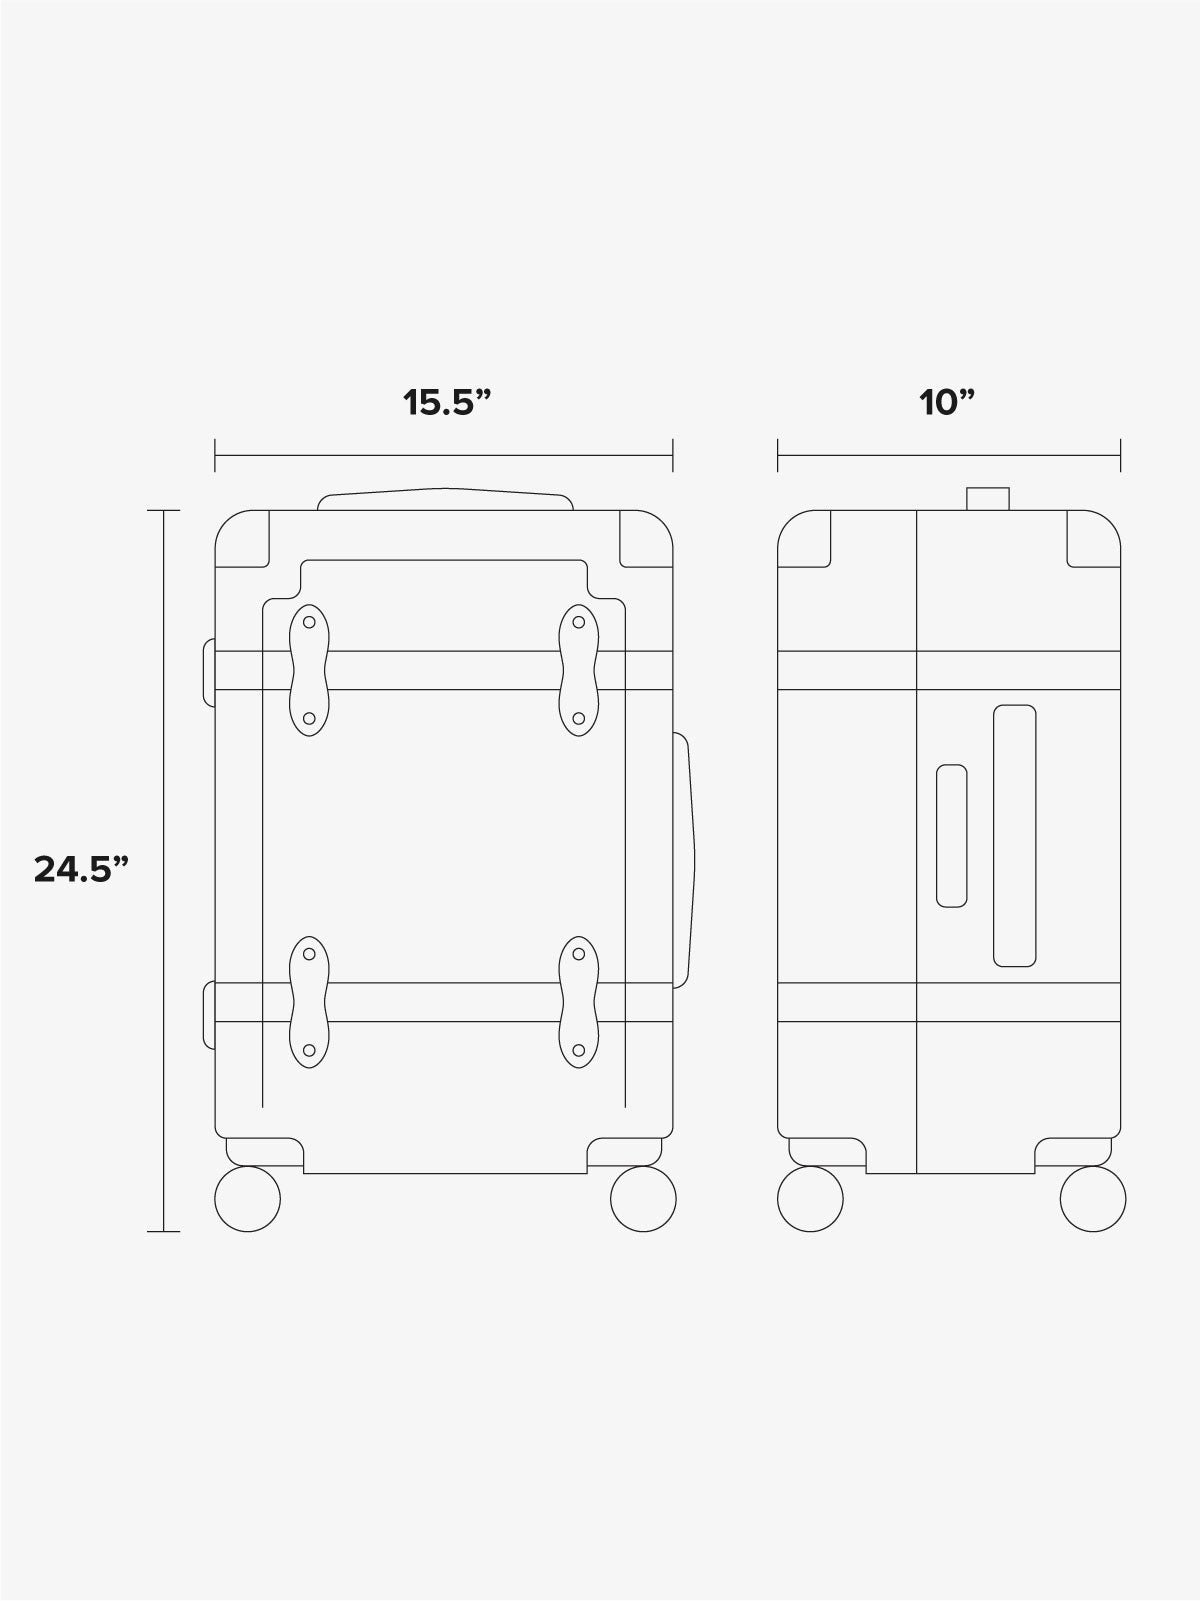 Trnk medium luggage dimensions